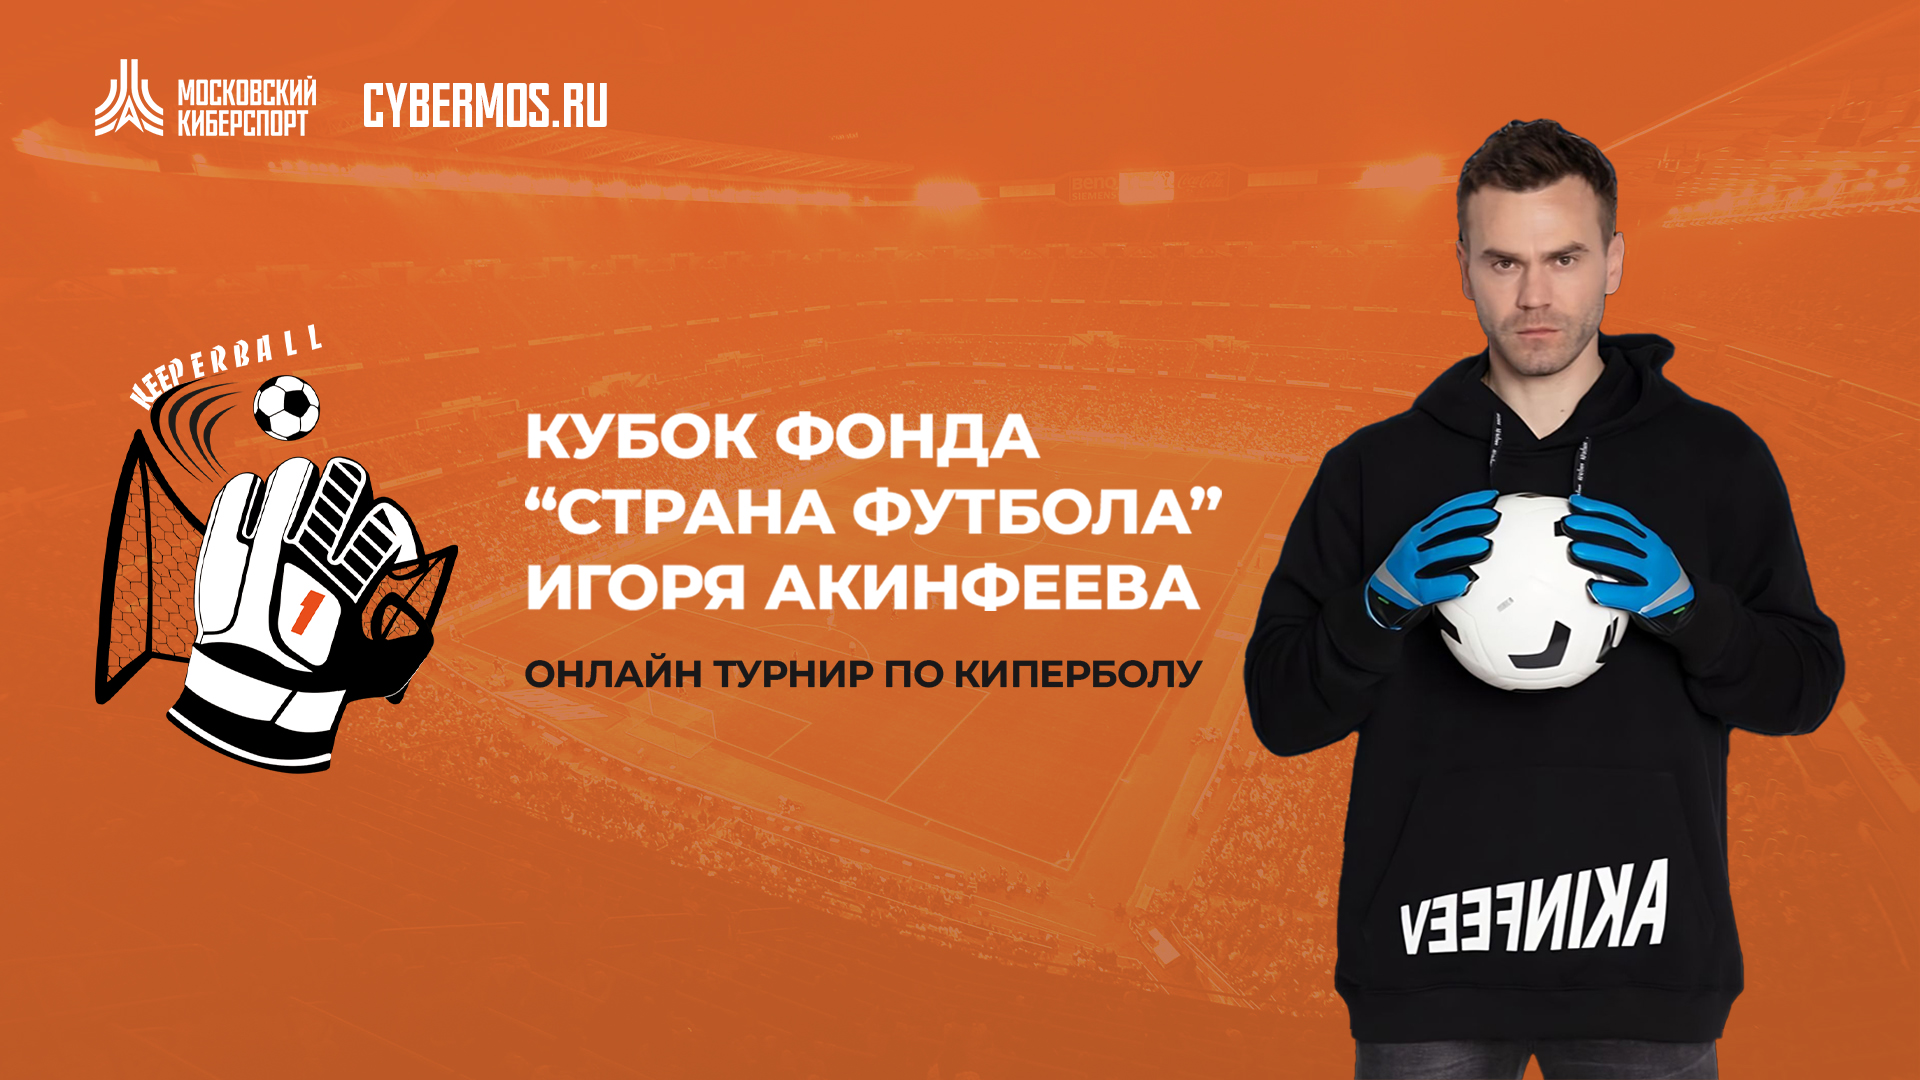 <strong>Фонд Игоря Акинфеева проведет заключительные отборочные турниры по киперболу в рамках “Московского Киберспорта”</strong>